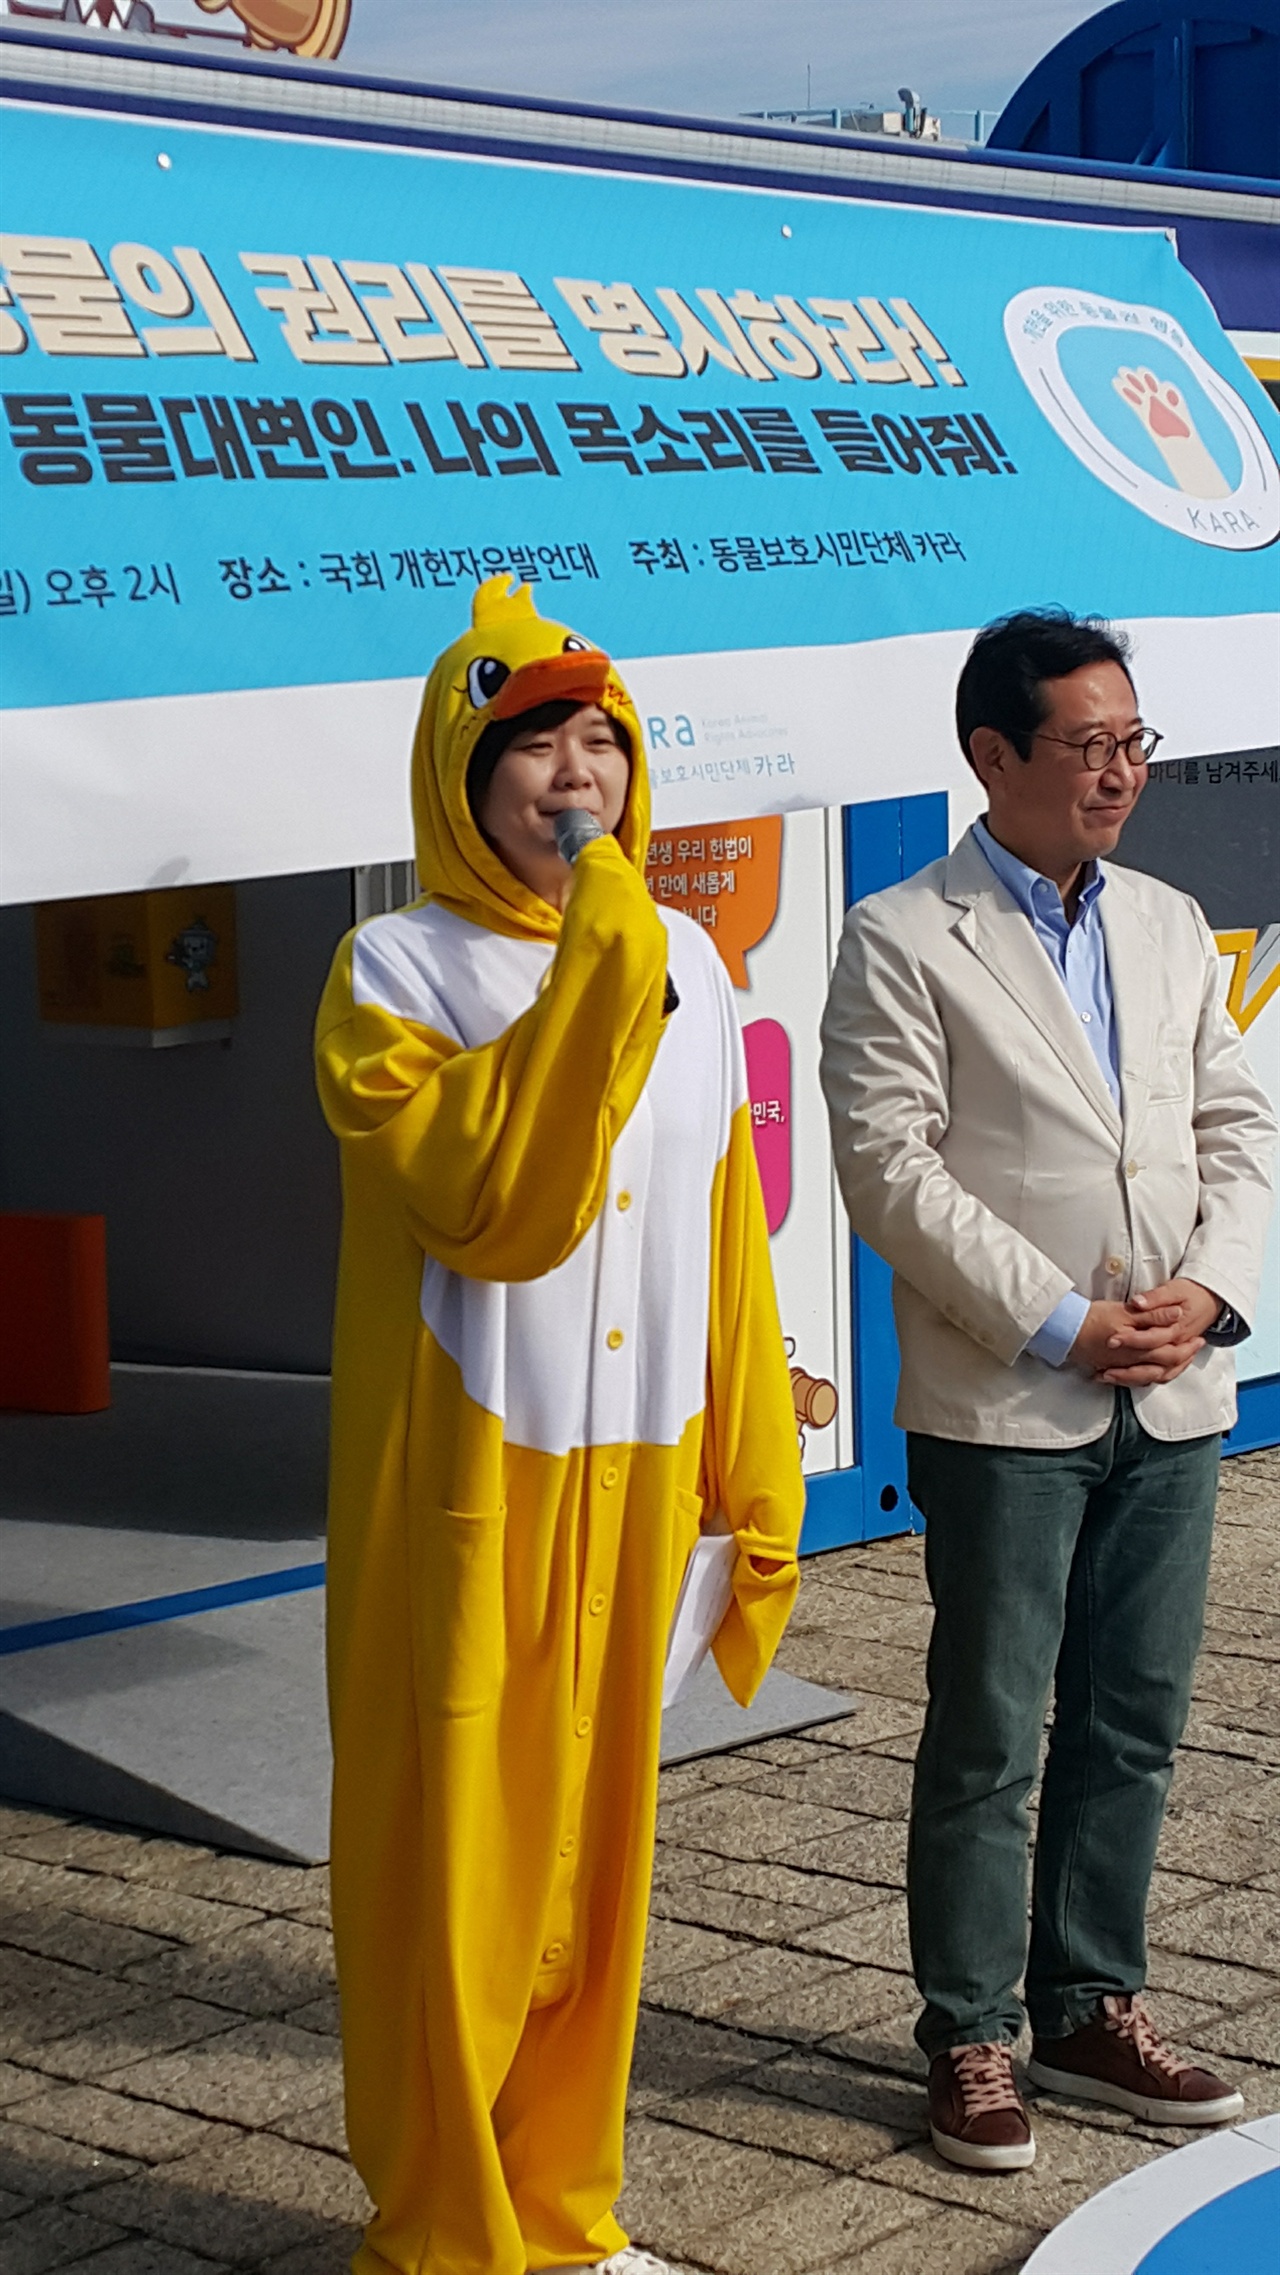 동물권이 포함된 개헌을 위한 기자회견에 참석한 이정미 의원과 김한정 의원